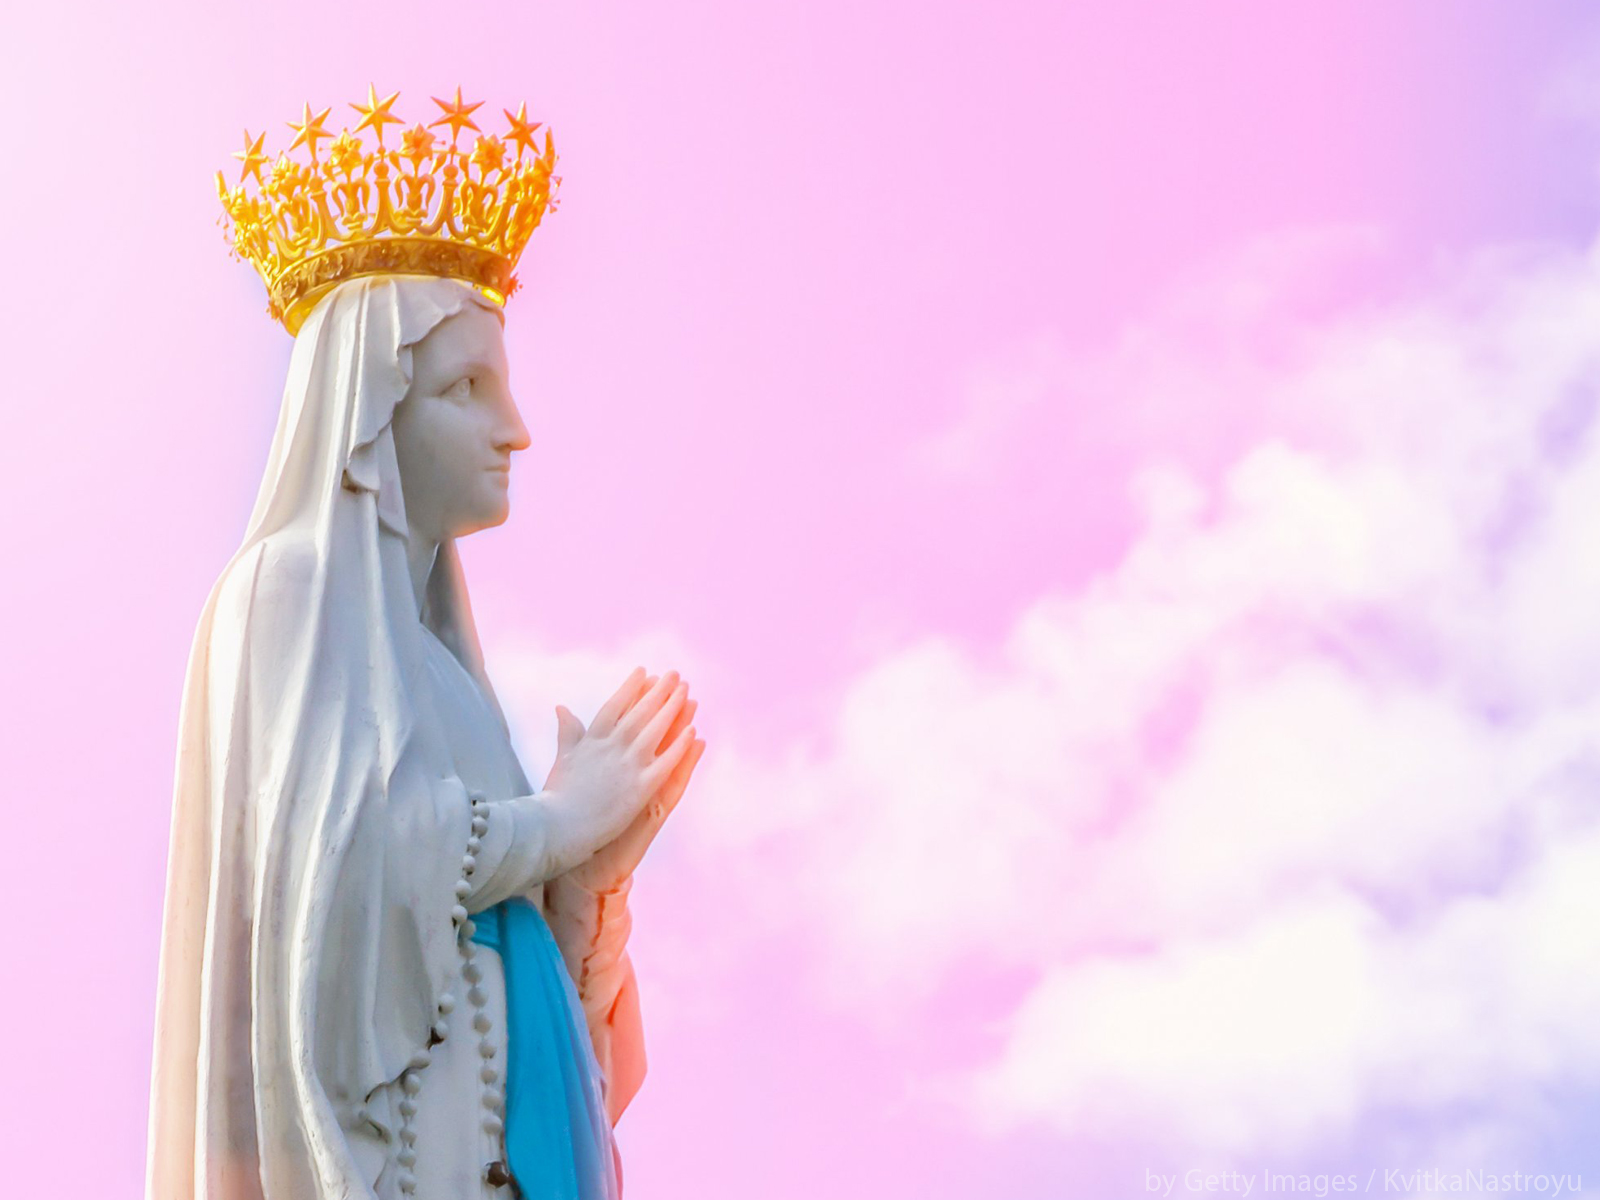 A virtude da Sabedoria Divina de Nossa Senhora